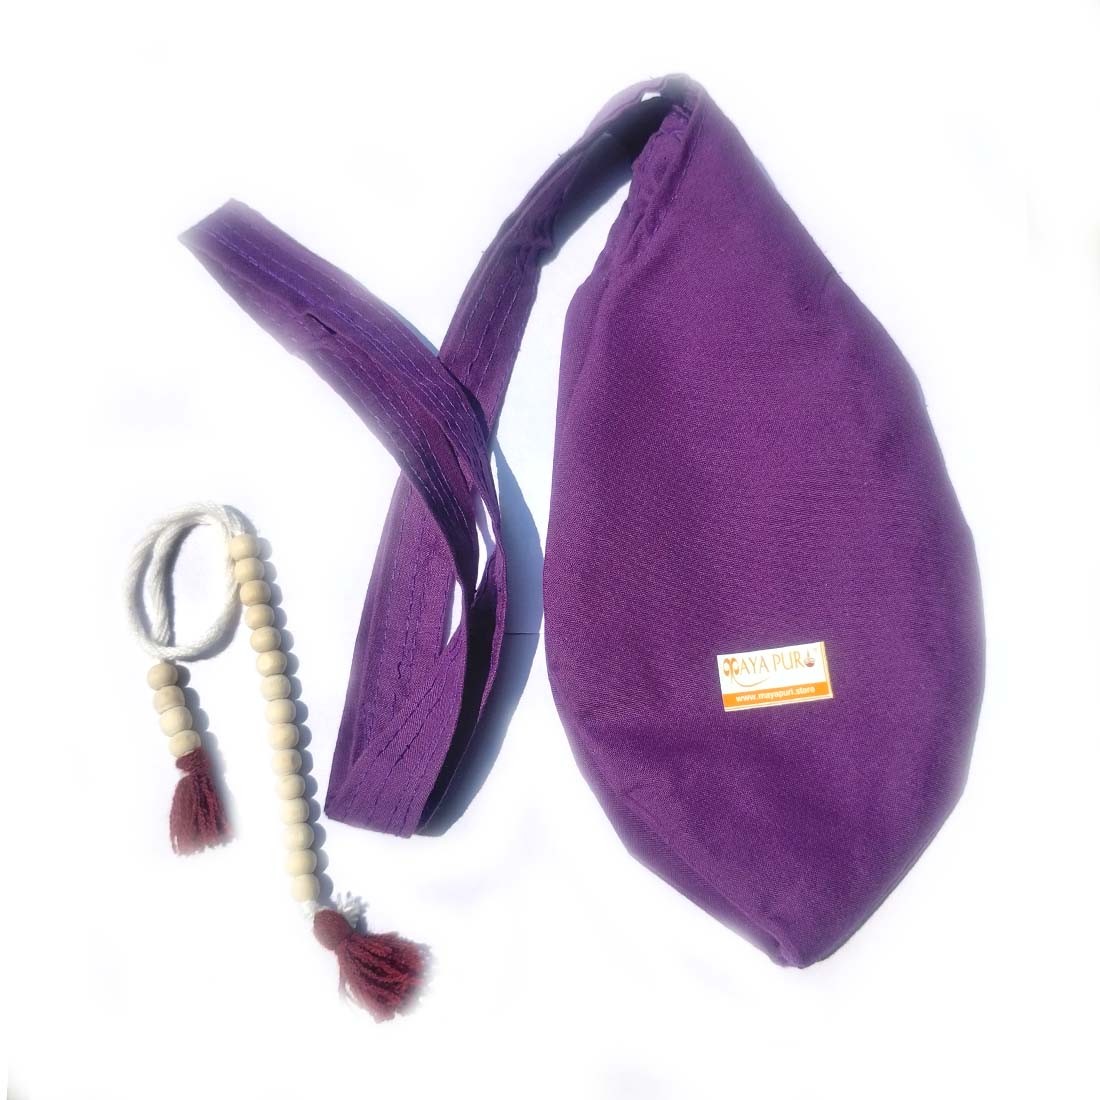 Khadi Cotton Japa Mala Bag/Chanting Bag or Beads Bag with Sakshi Mala Counter